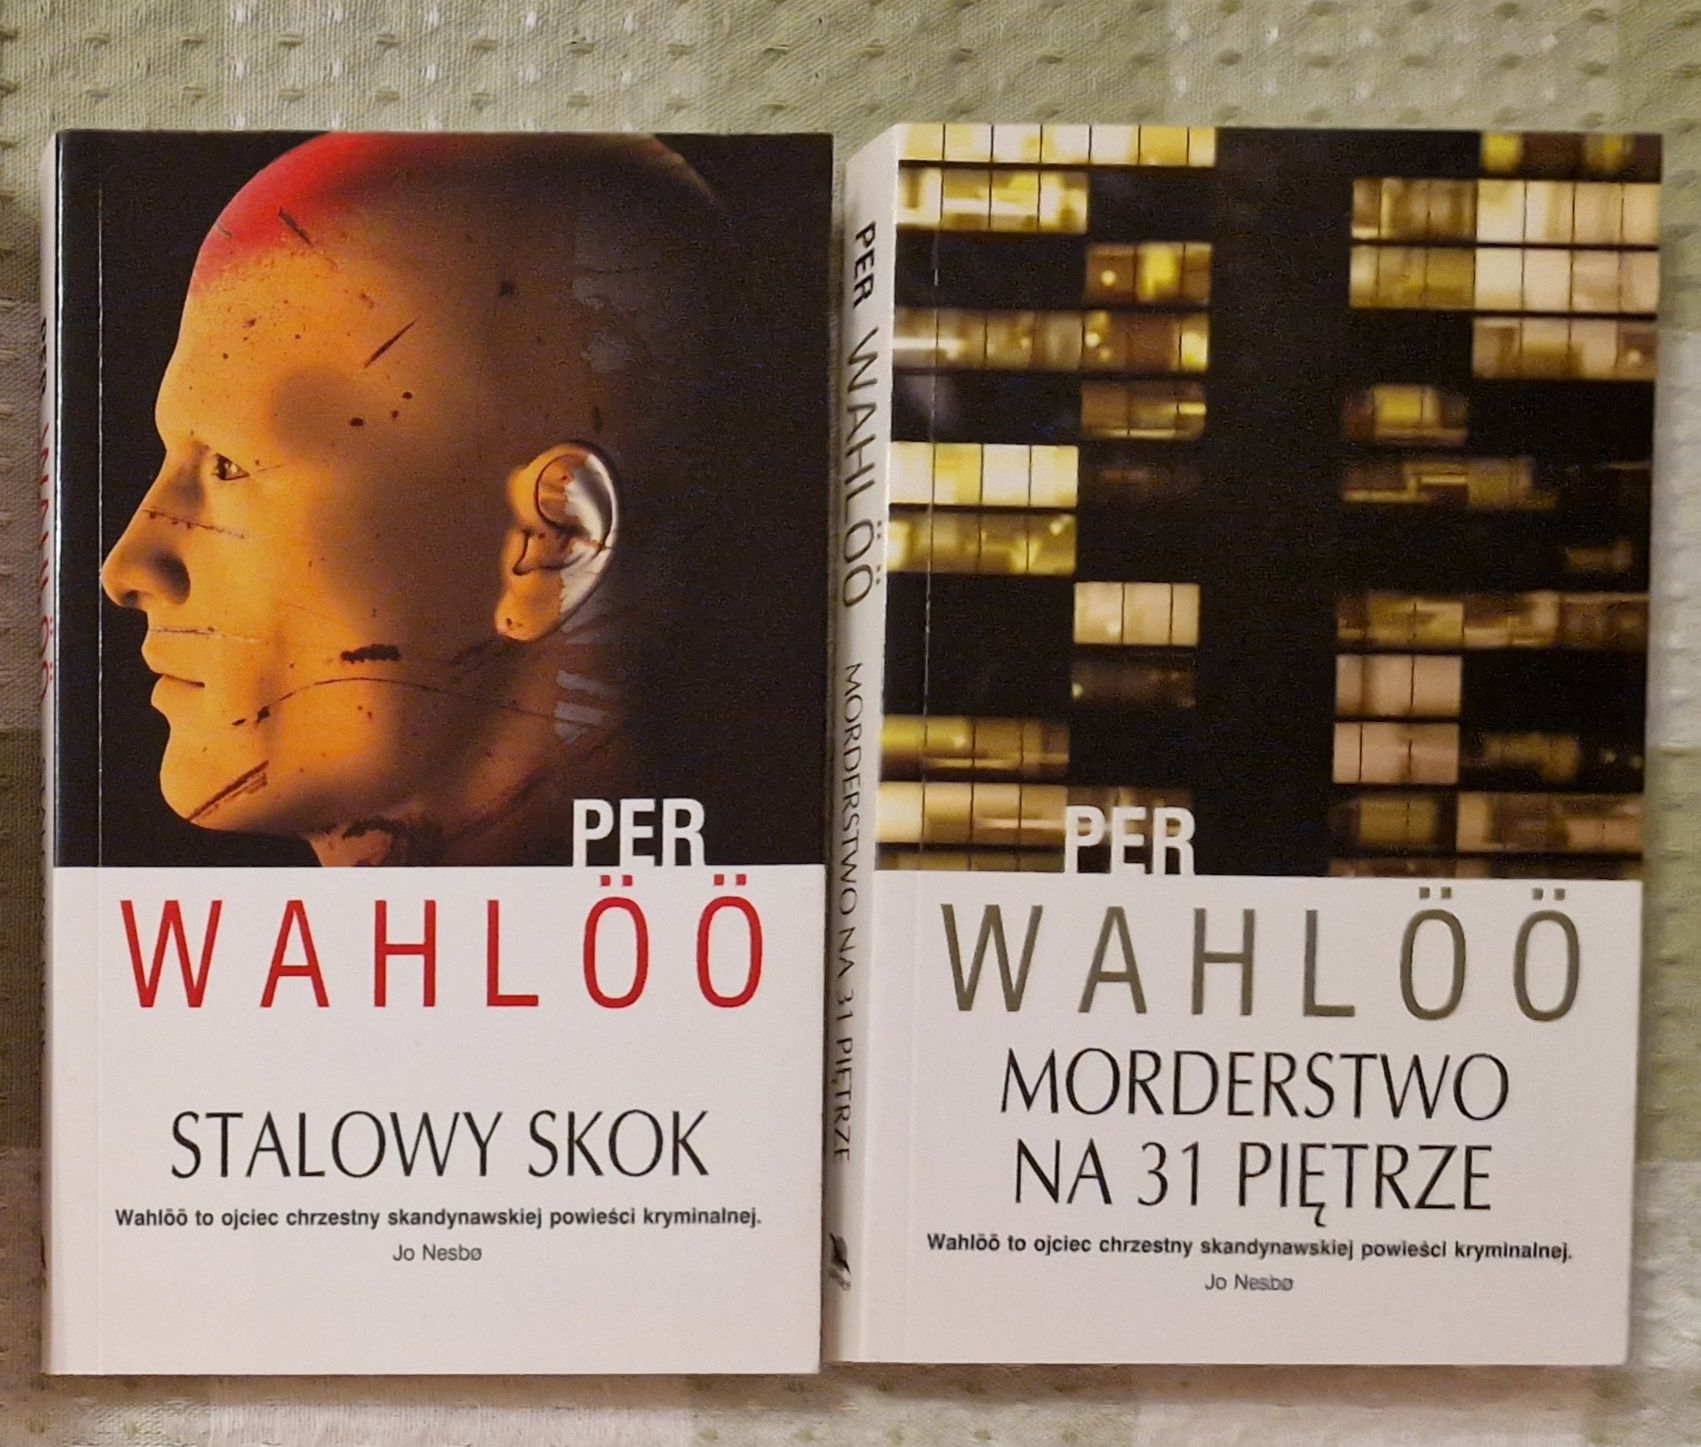 Per Wahloo pakiet 2 książek - Stalowy skok i Morderstwo ma 31 piętrze